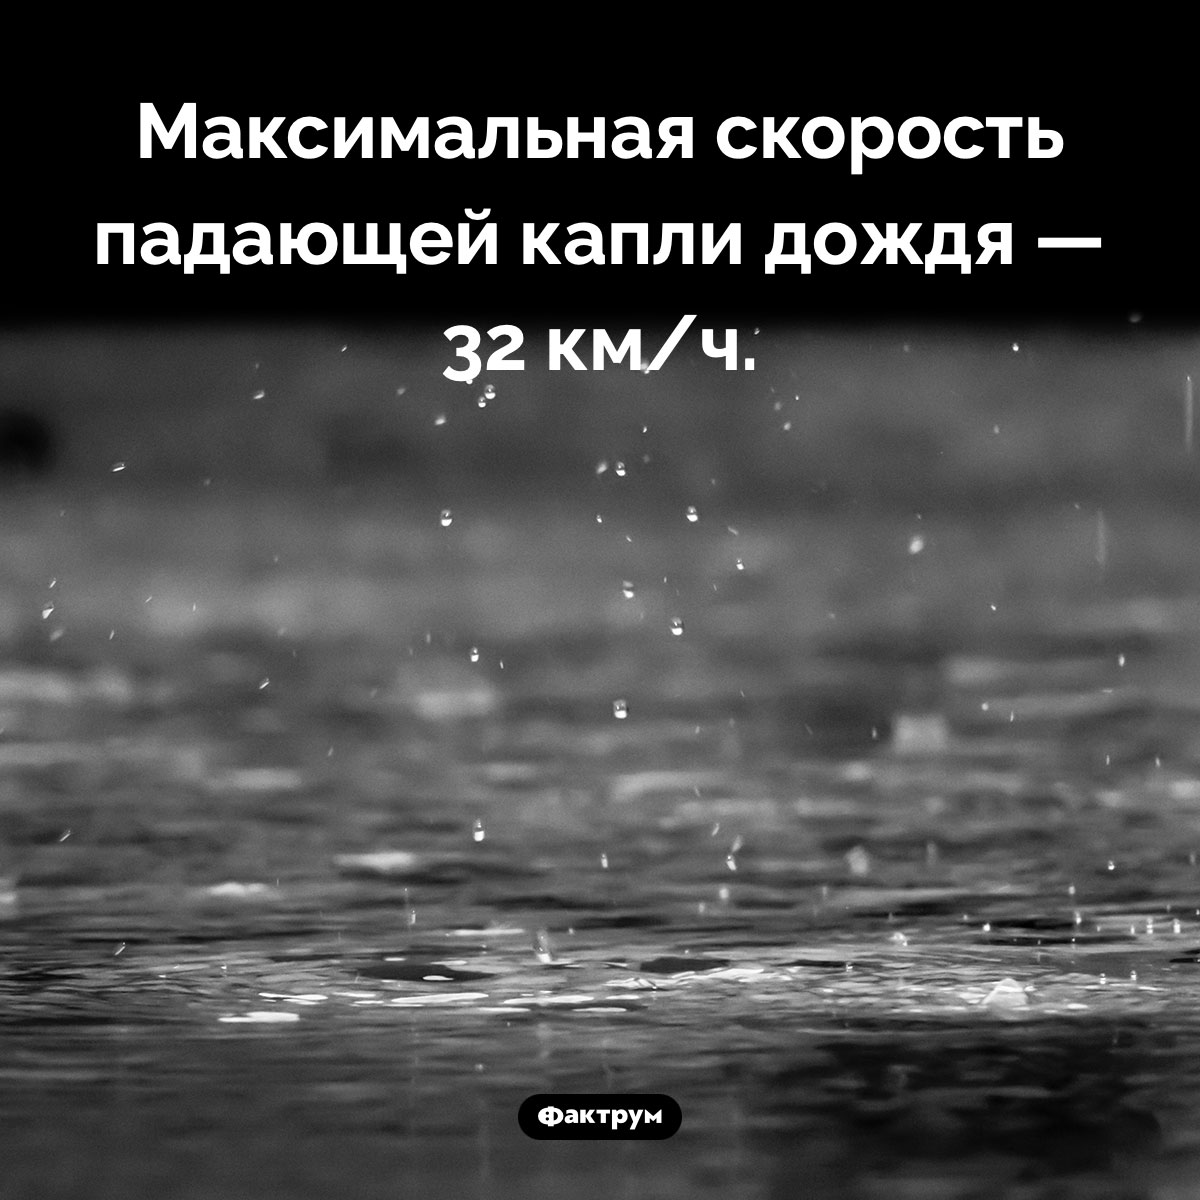 С какой скоростью падает дождь. Максимальная скорость падающей капли дождя — 32 км/ч.